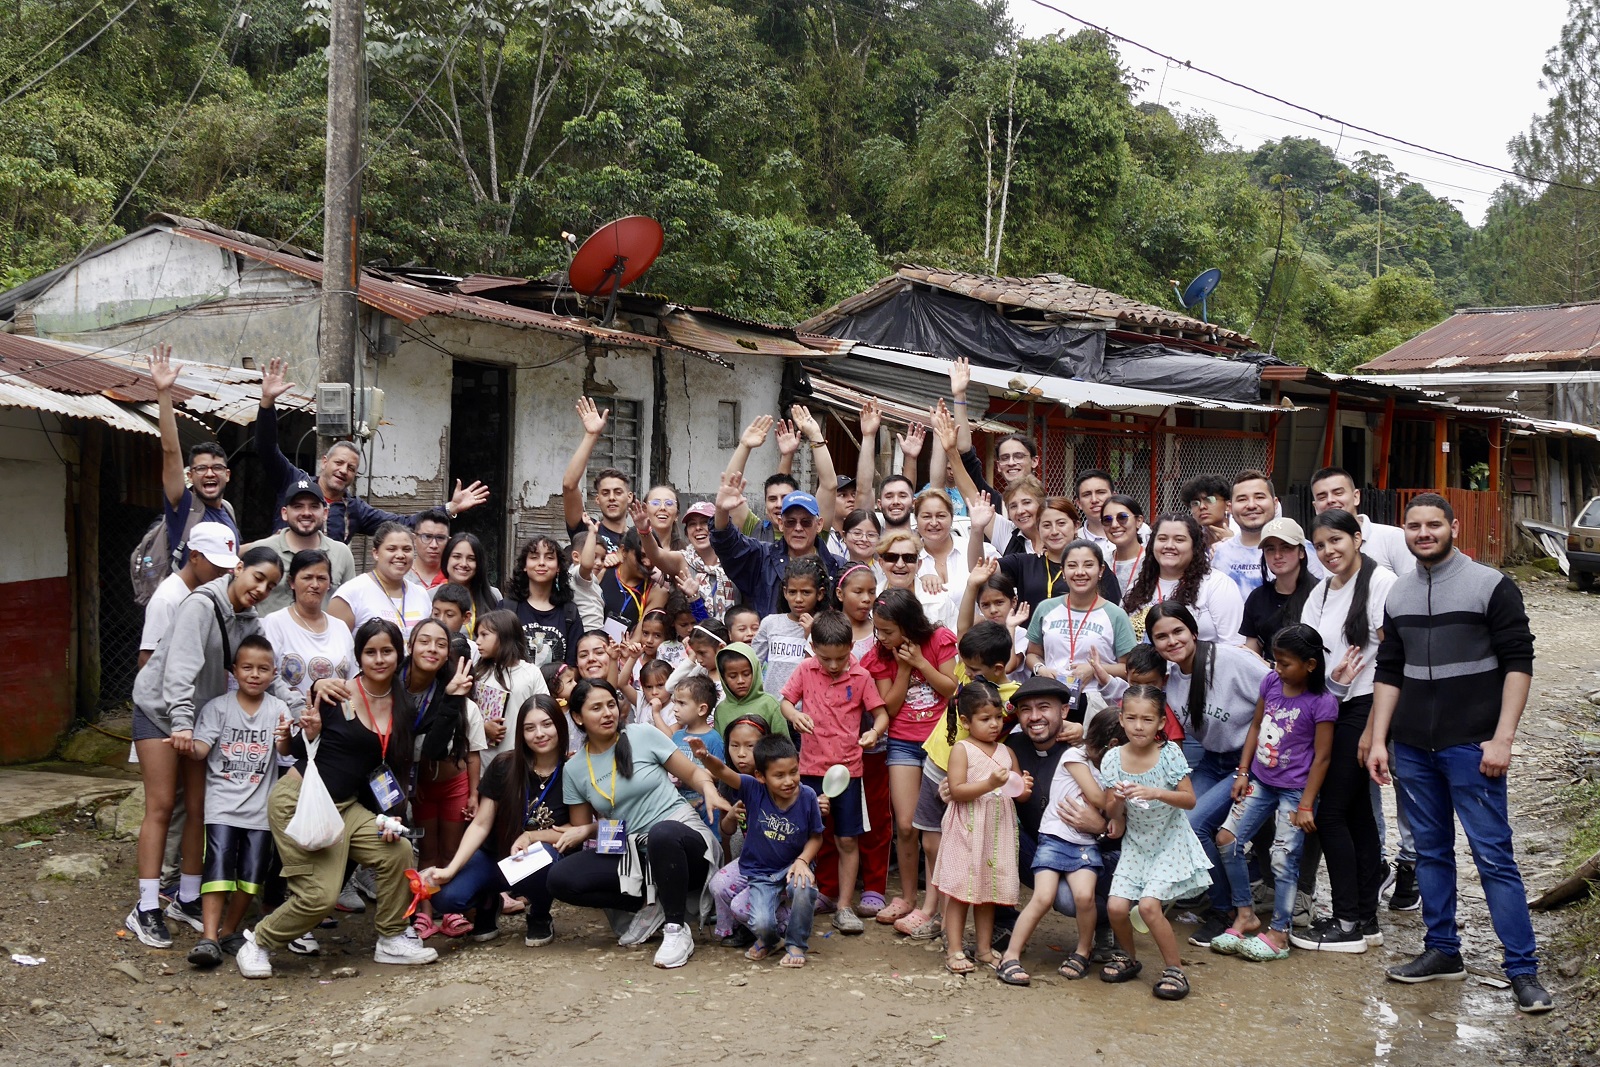 11. Nationales Treffen von Lazos de Amistad – Bänder der Freundschaft in Kolumbien